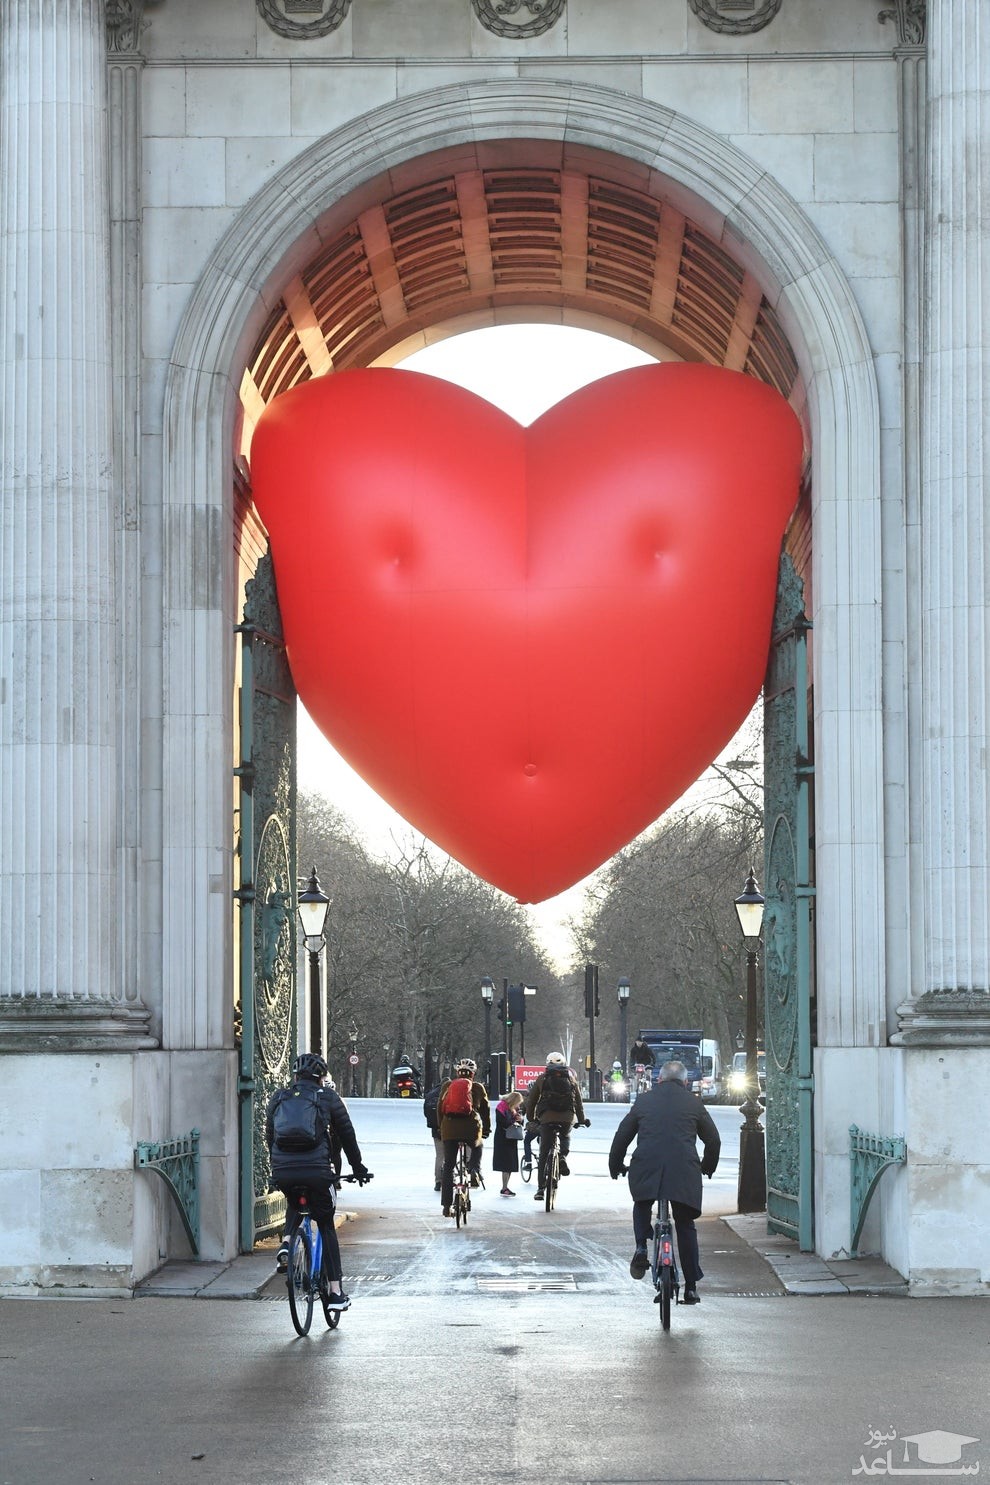 نصب نشان قلب روز "ولنتاین"(روز عشاق) در یکی از ورودی های "هاید پارک" لندن/ ایونینگ استاندارد